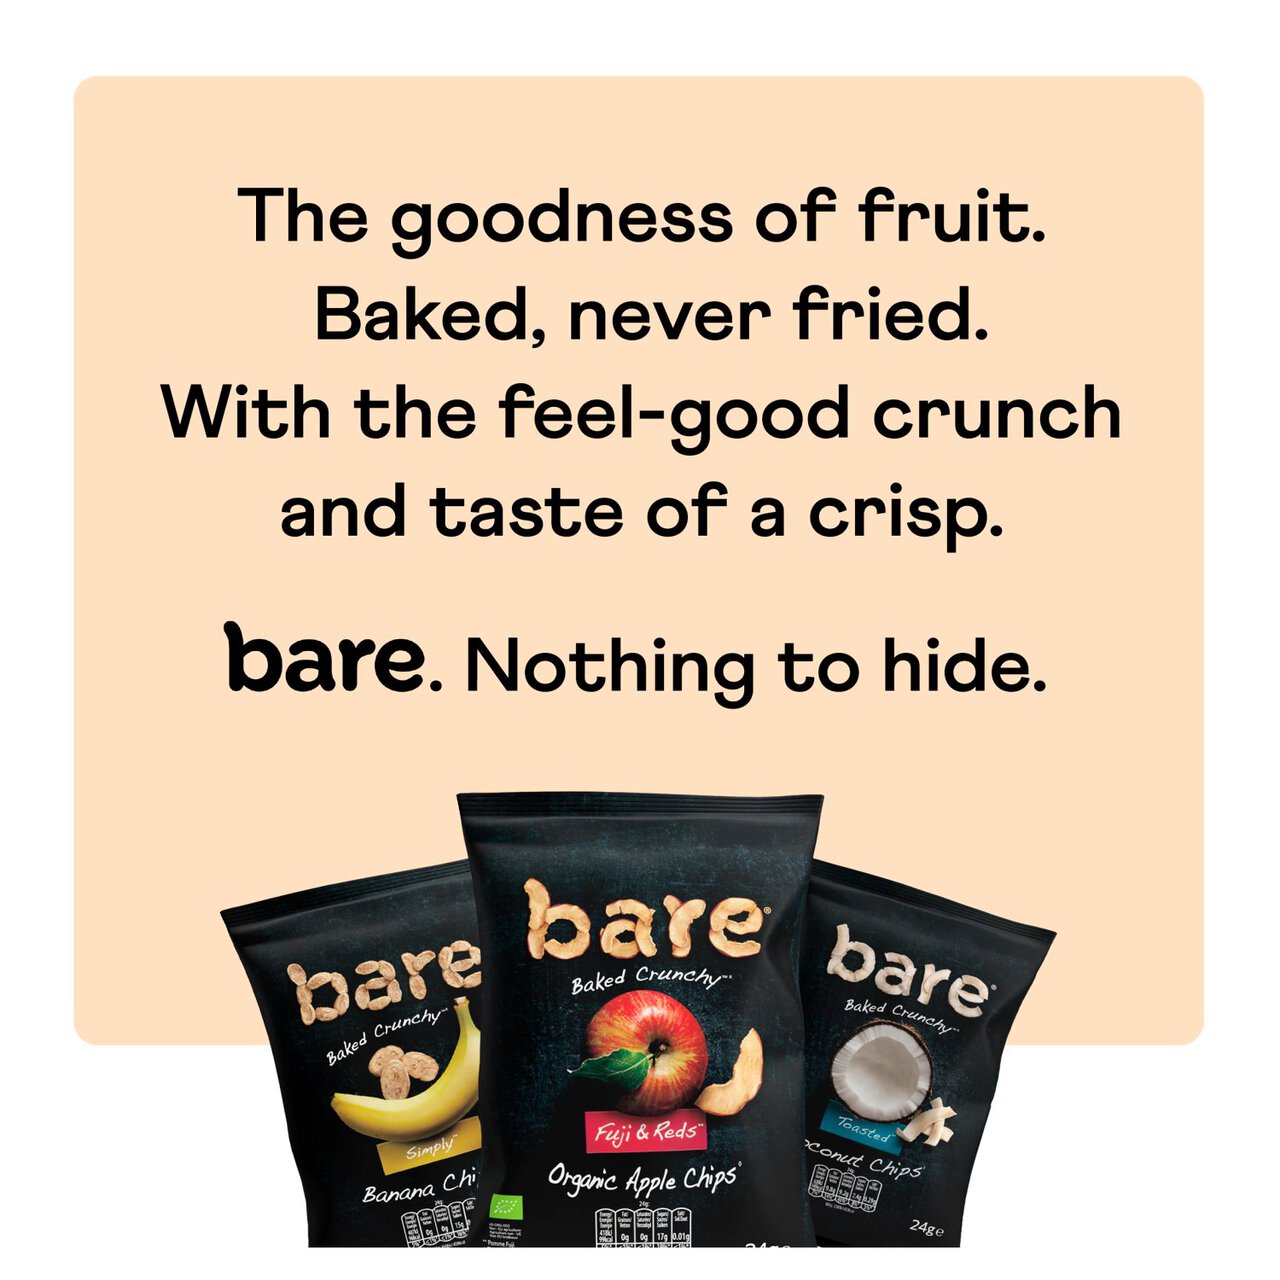 Bare Fruit Snacks Banana Chips 24g